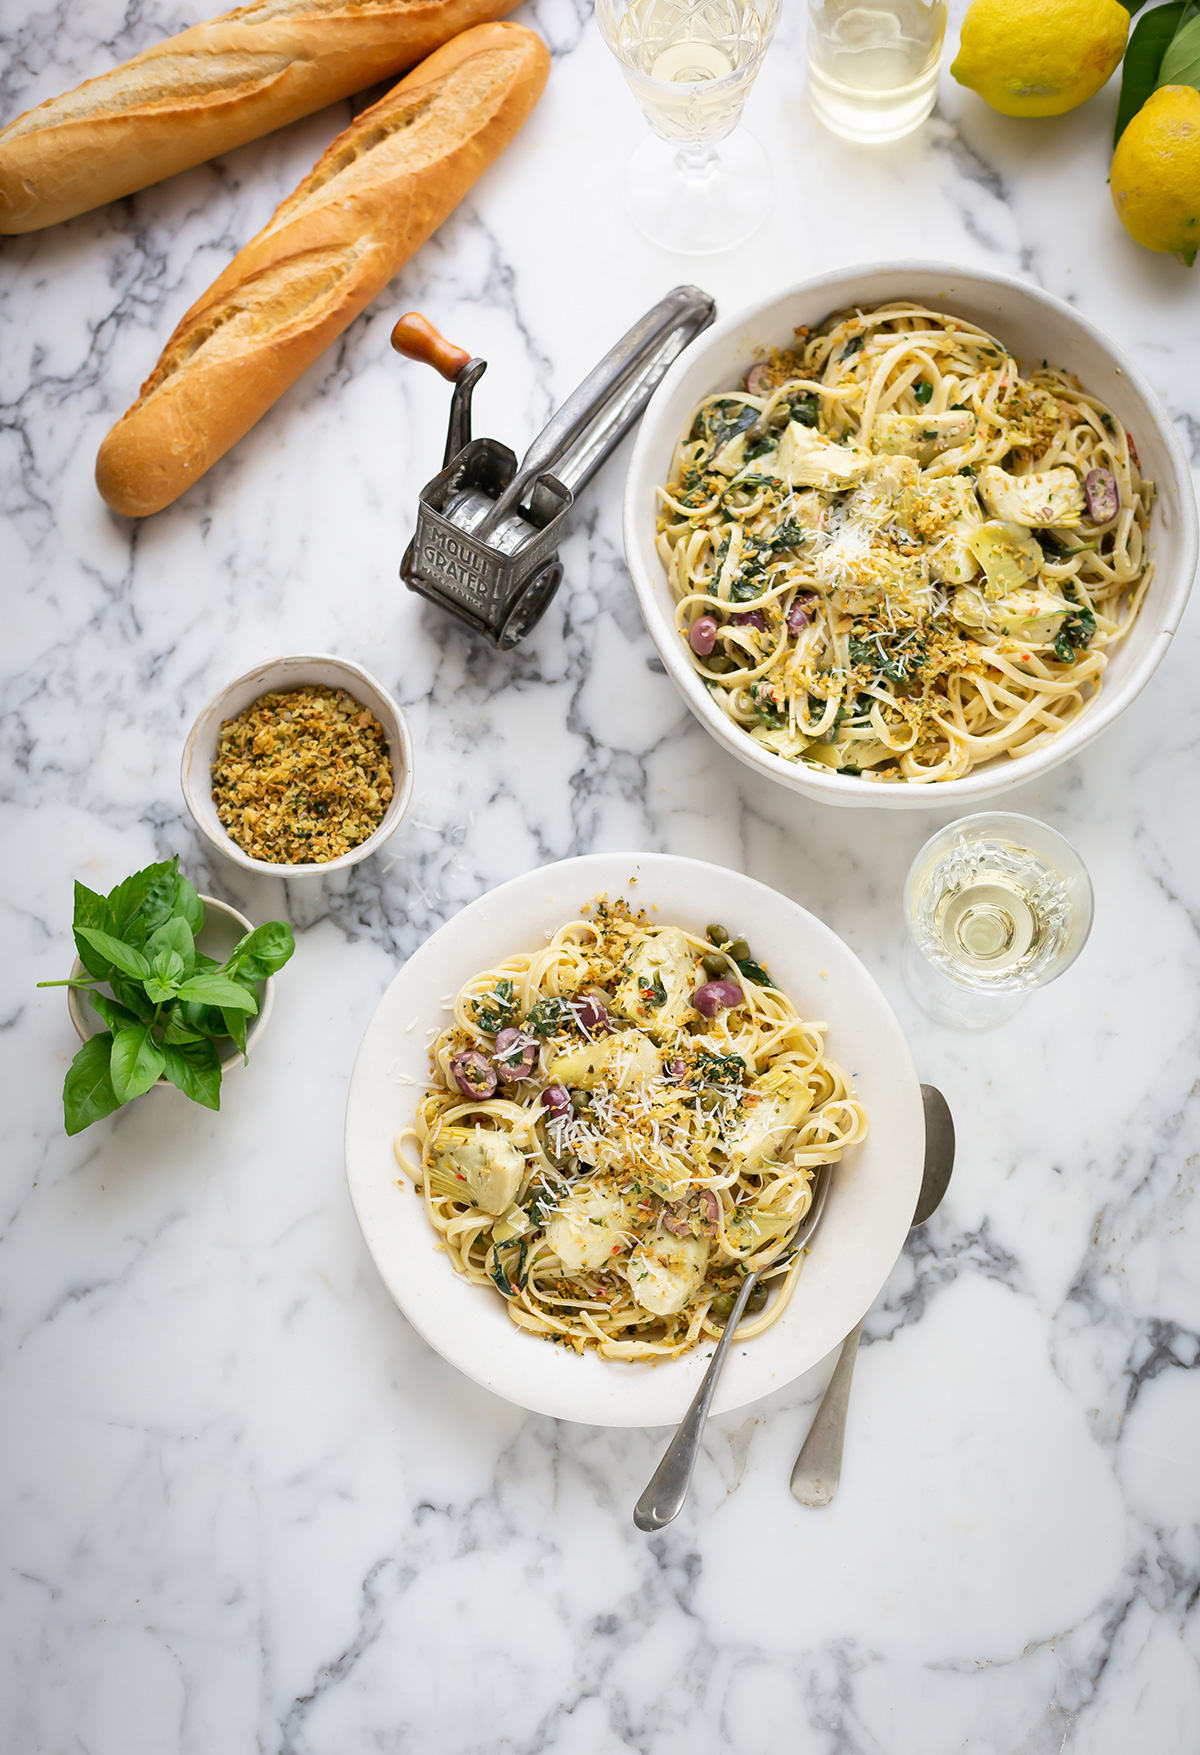 Creamy pasta with artichokes & spinach